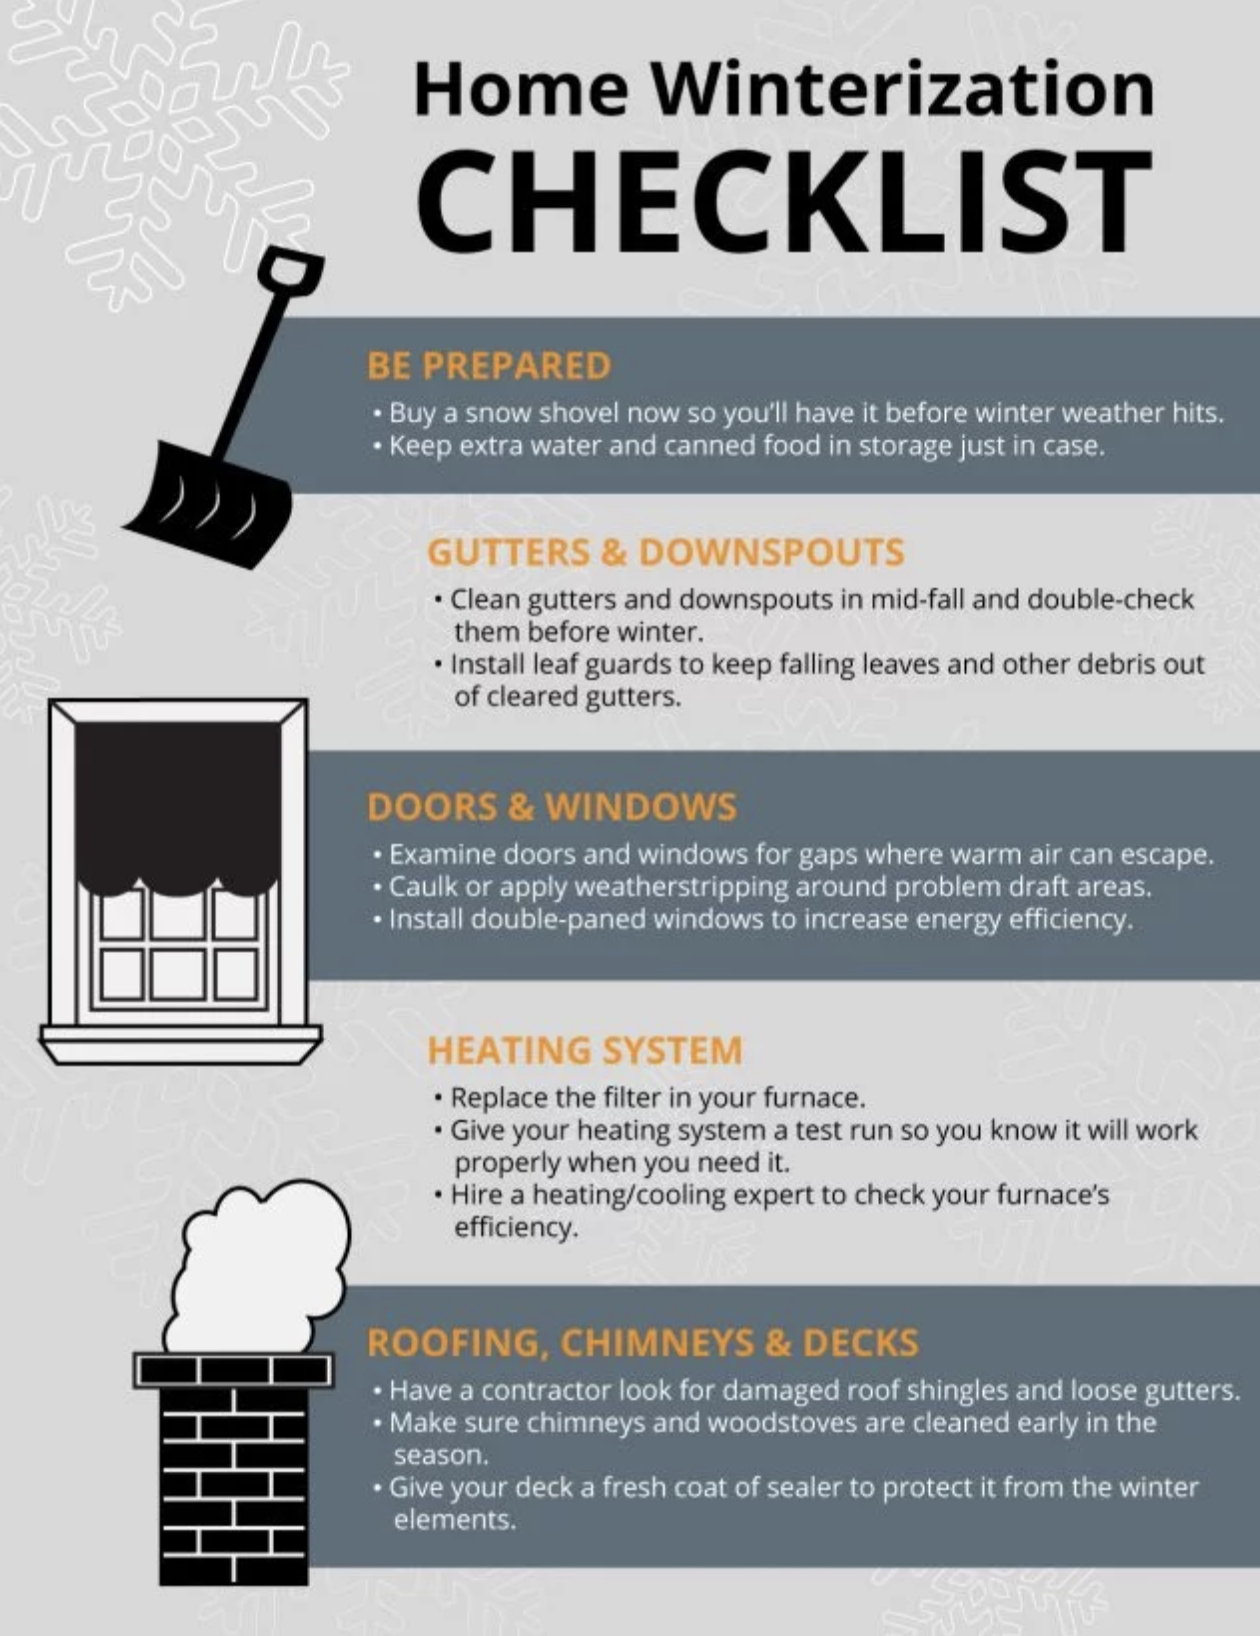 Home winterization checklist